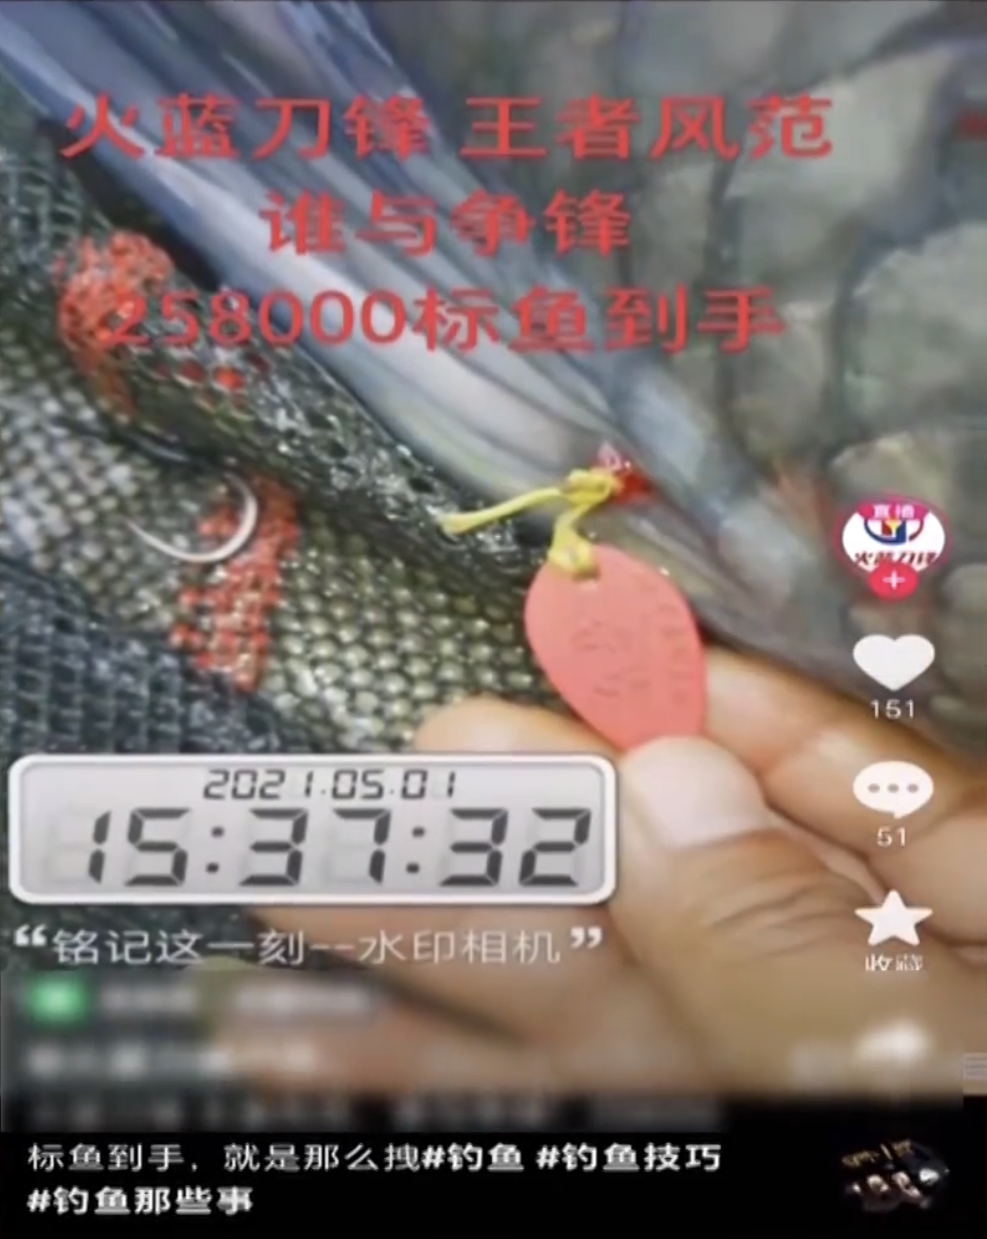 釣標魚的影片在短視頻平台有一定捧場客。